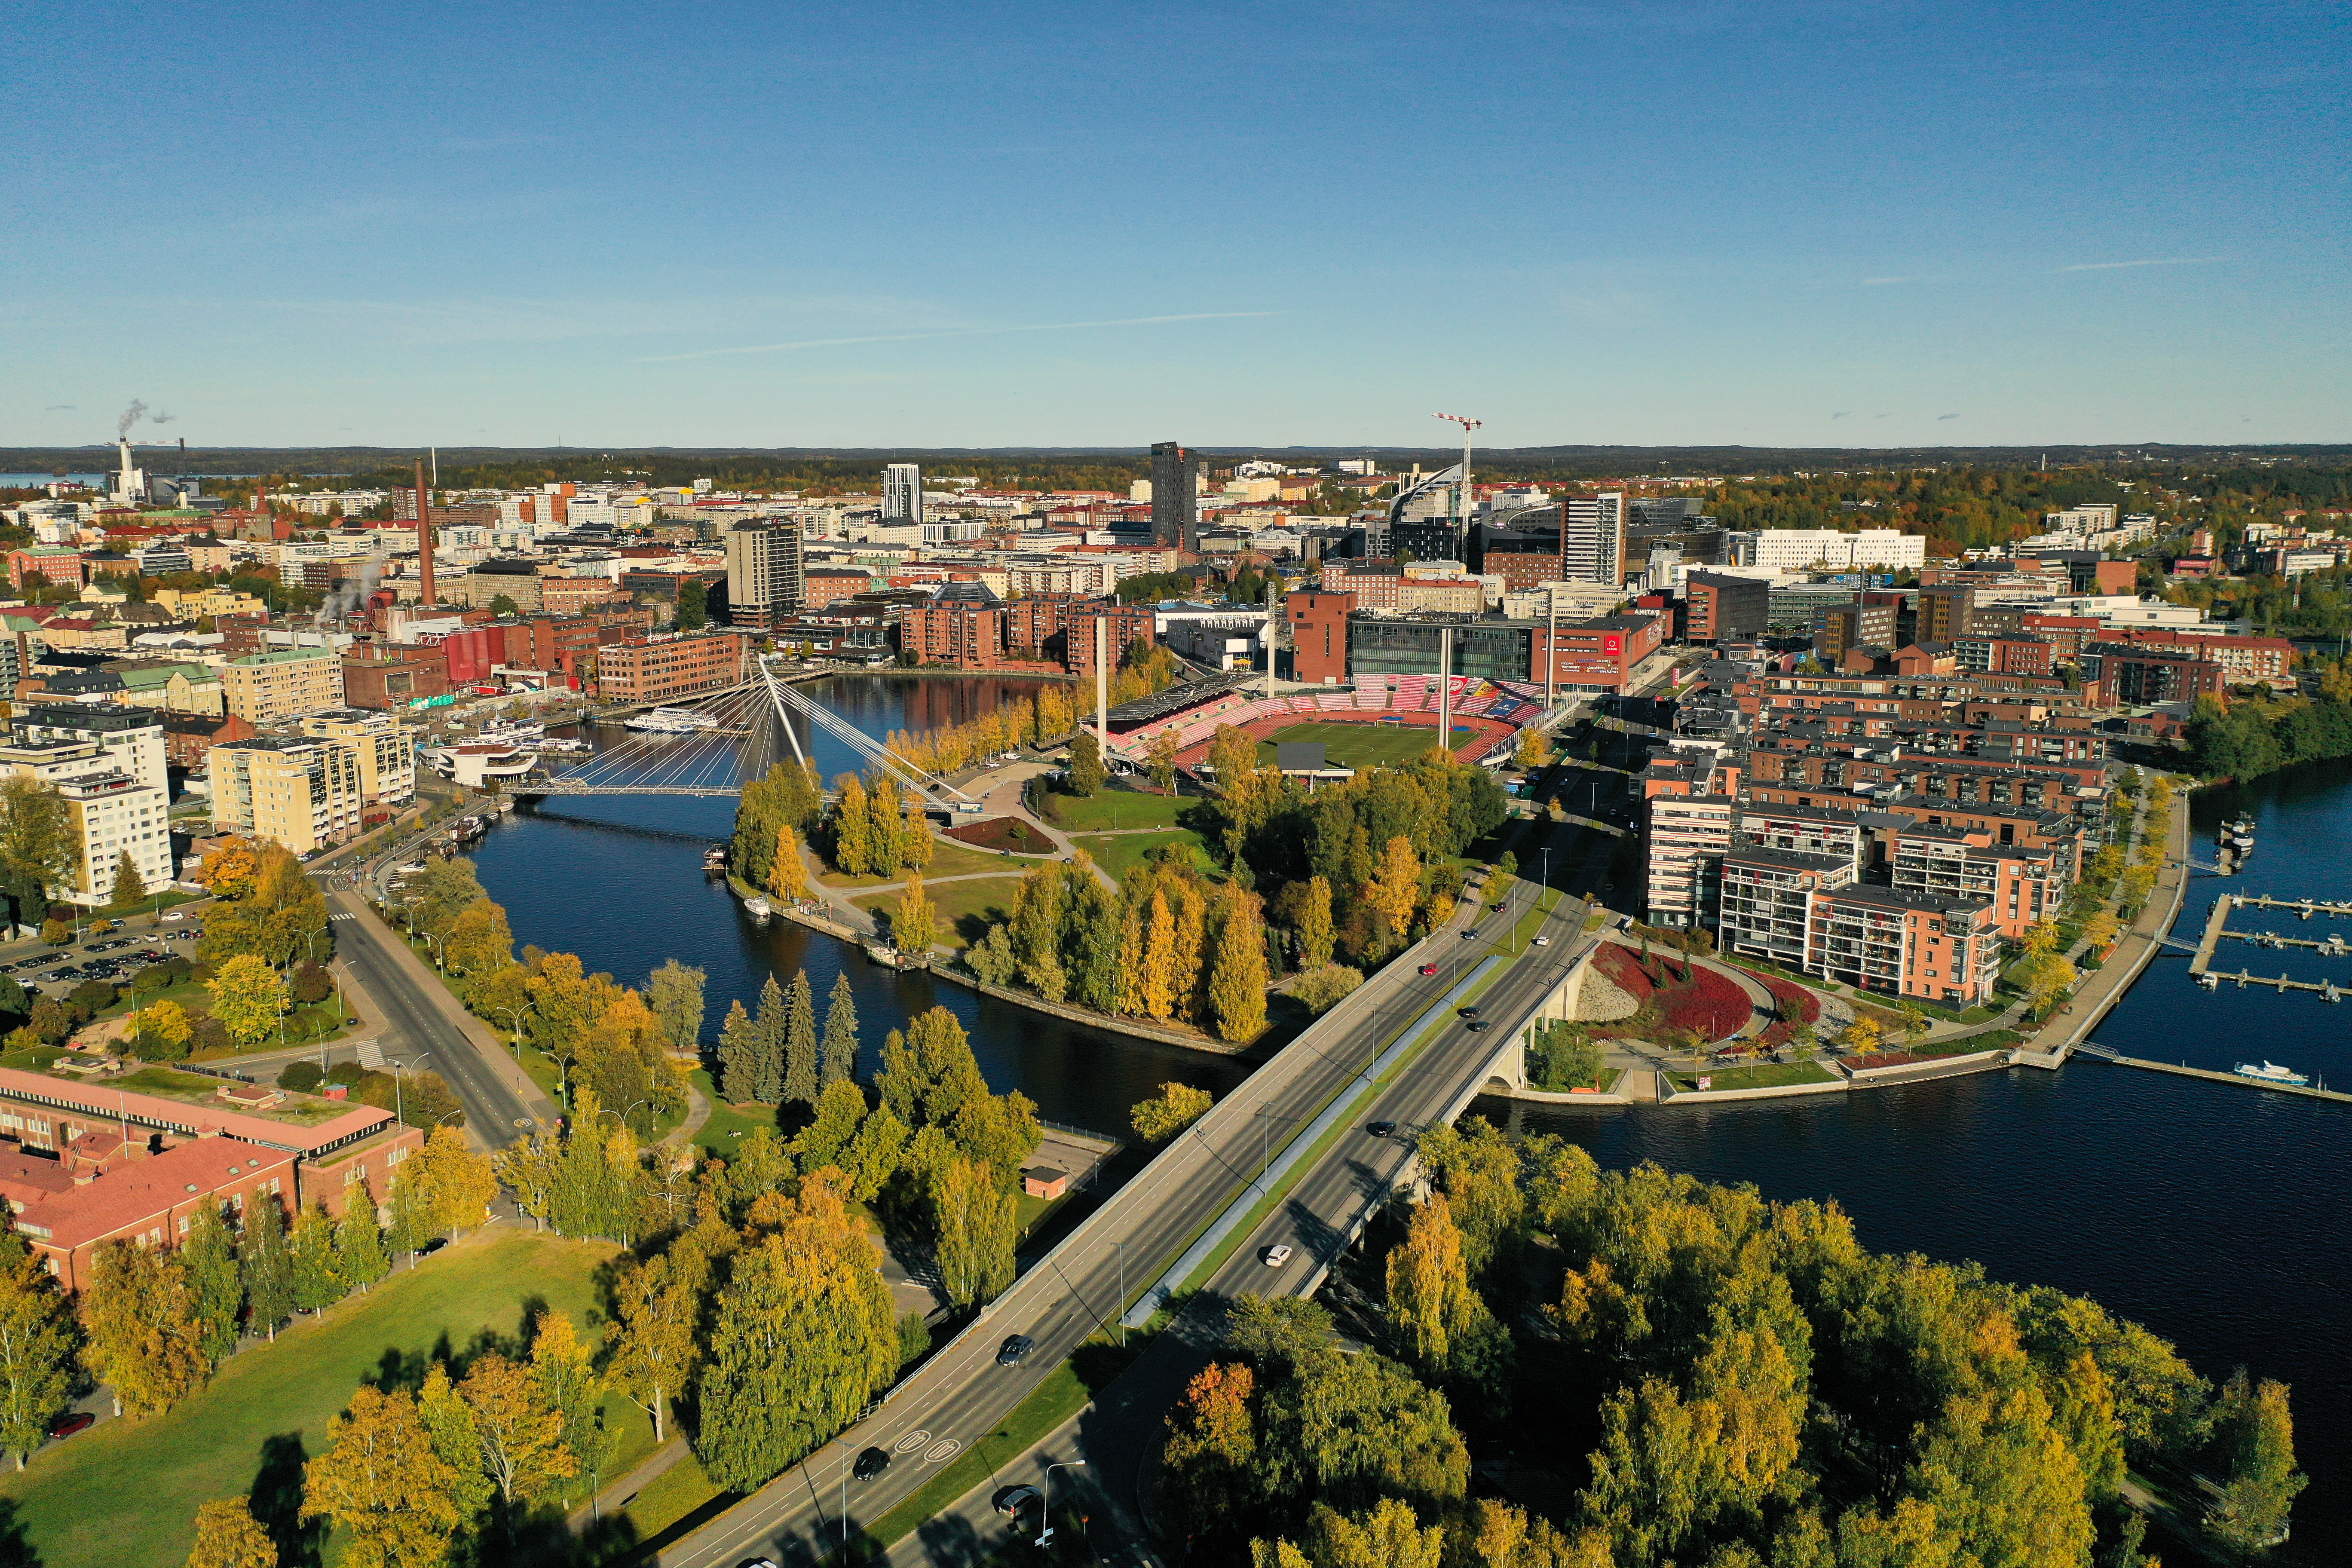 Tampereen keskustan etualalla näkyy Ratinan silta, joka ylittää veden. Sillan takana näkyy kävelysilta ja Ratinan suvanto ja Ratinan stadion. Lisäksi kuvassa näkyy paljon kerrostaloja ja muuta kaupunki-infrastruktuuria.